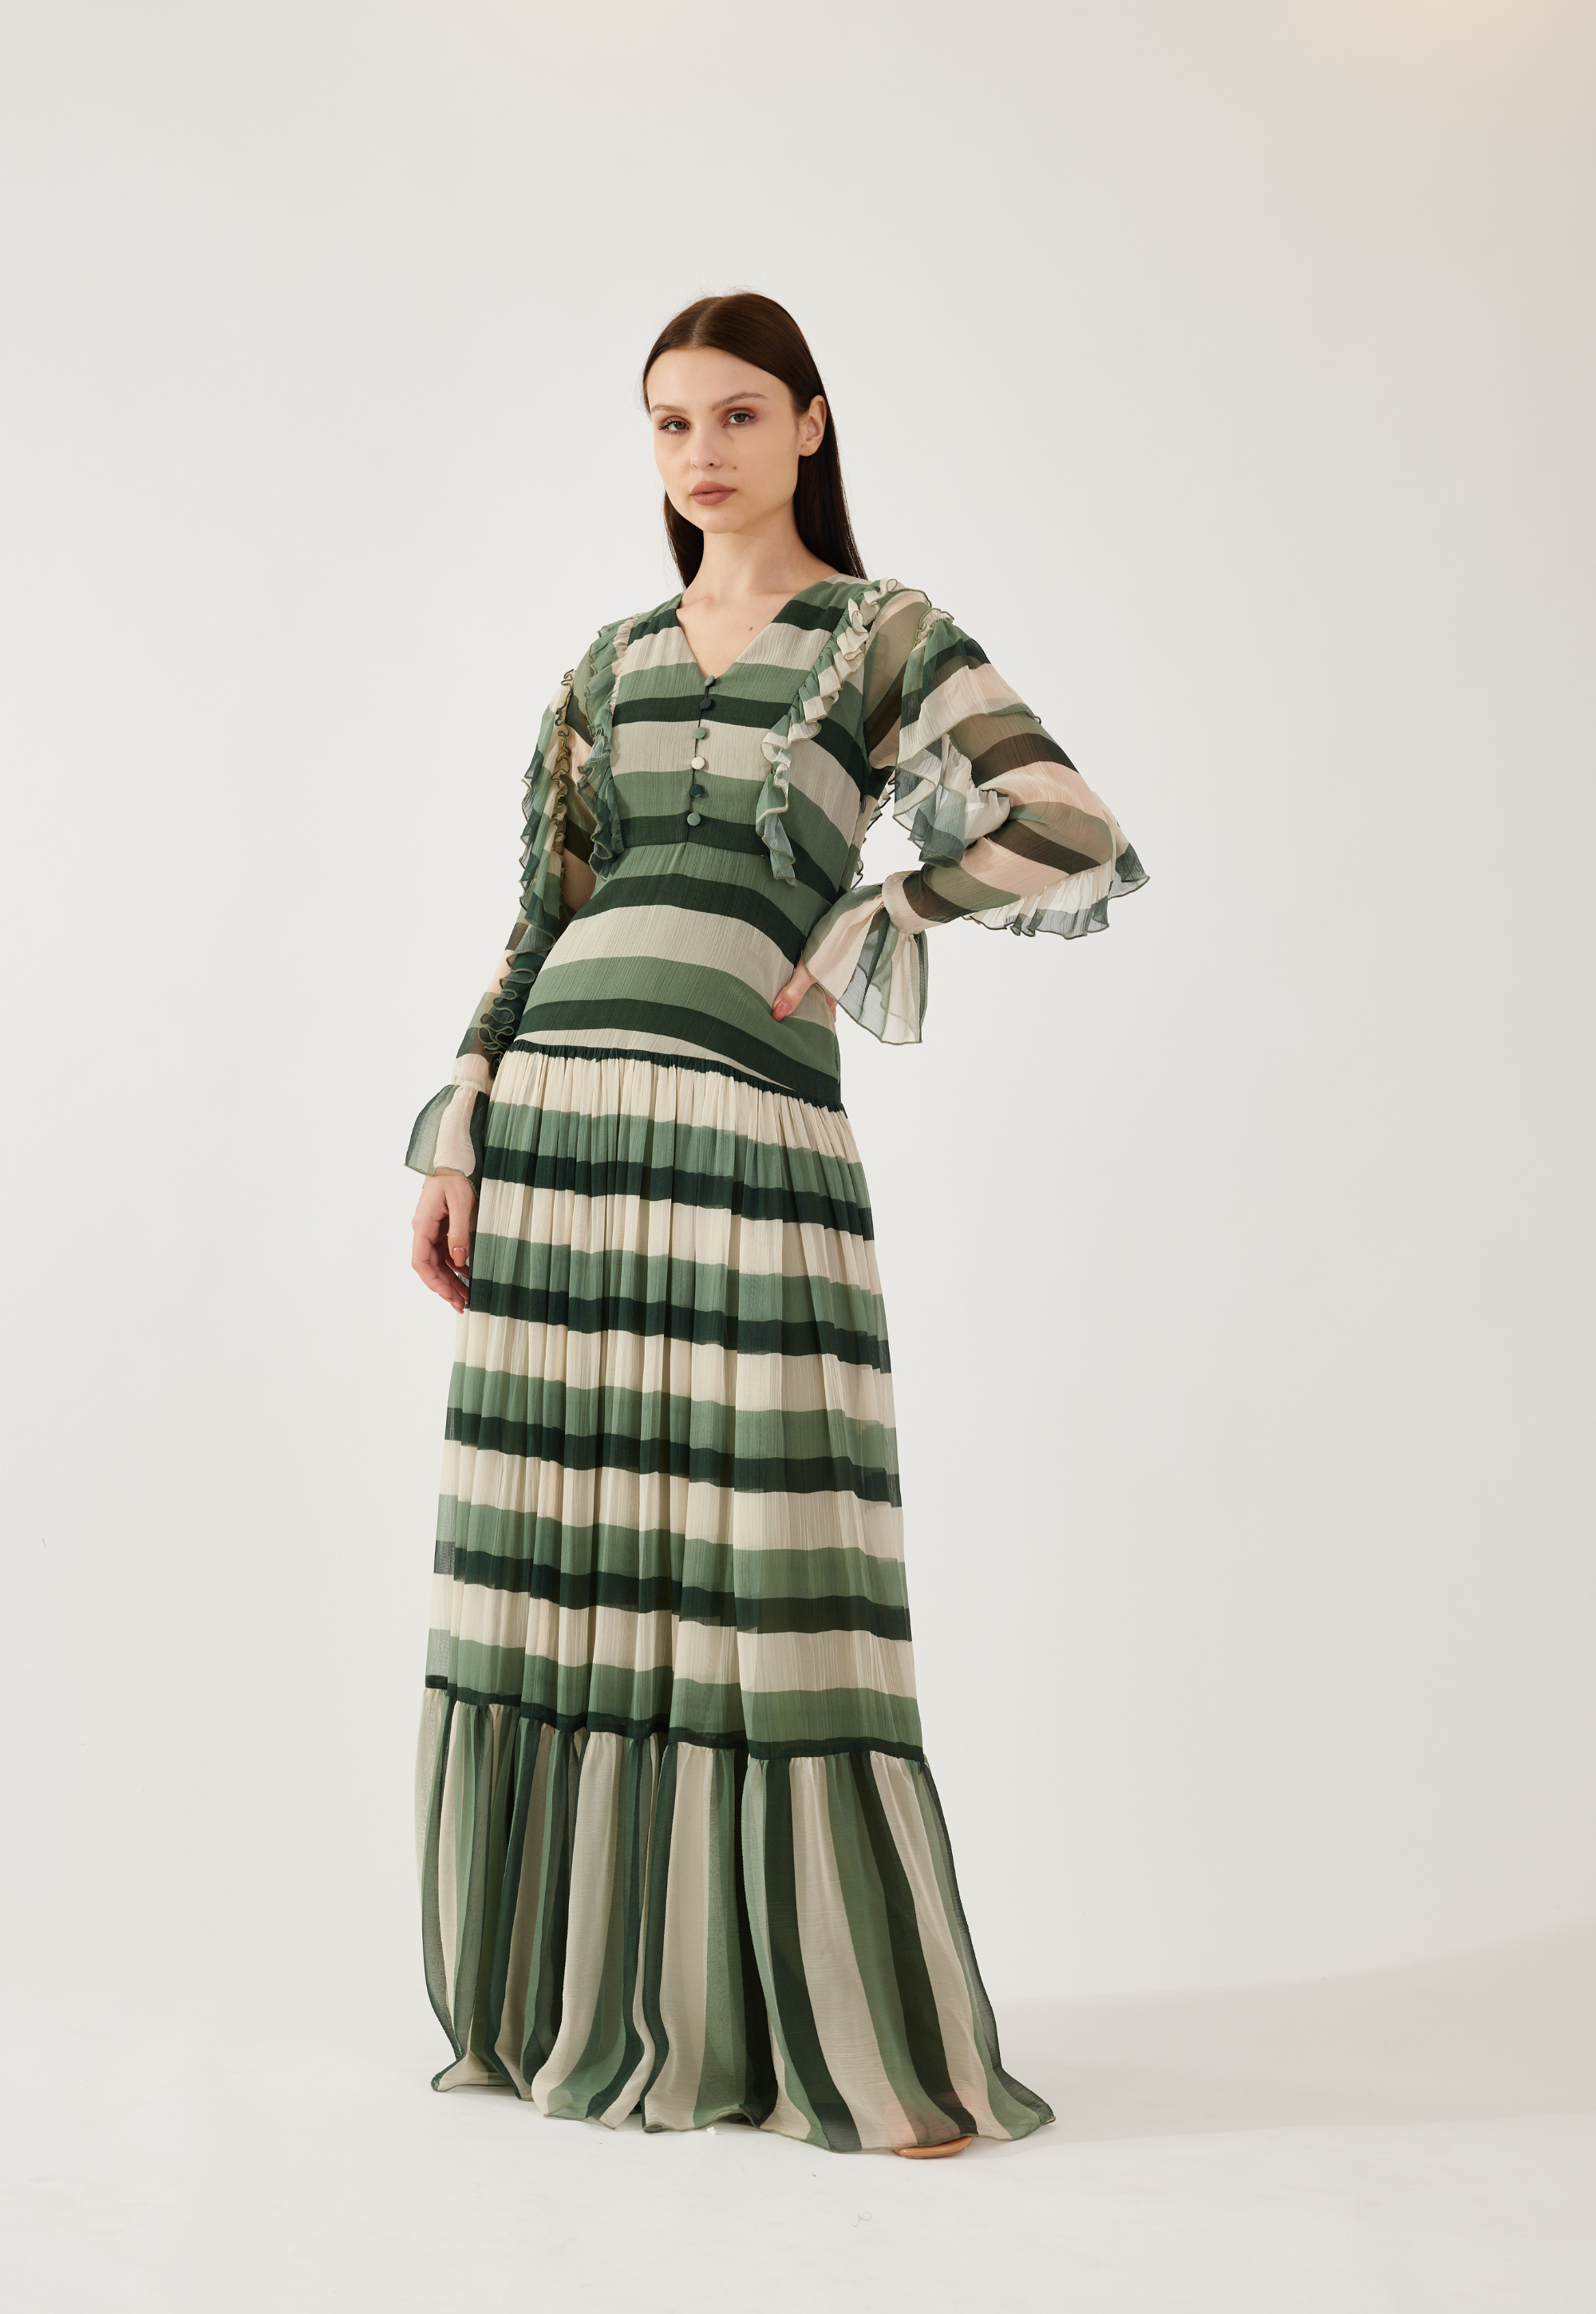 Buy prosperveil Colorful Striped Dresses Women Slit Dress Long Sleeve  V-Neck Summer Long Dresses at Amazon.in